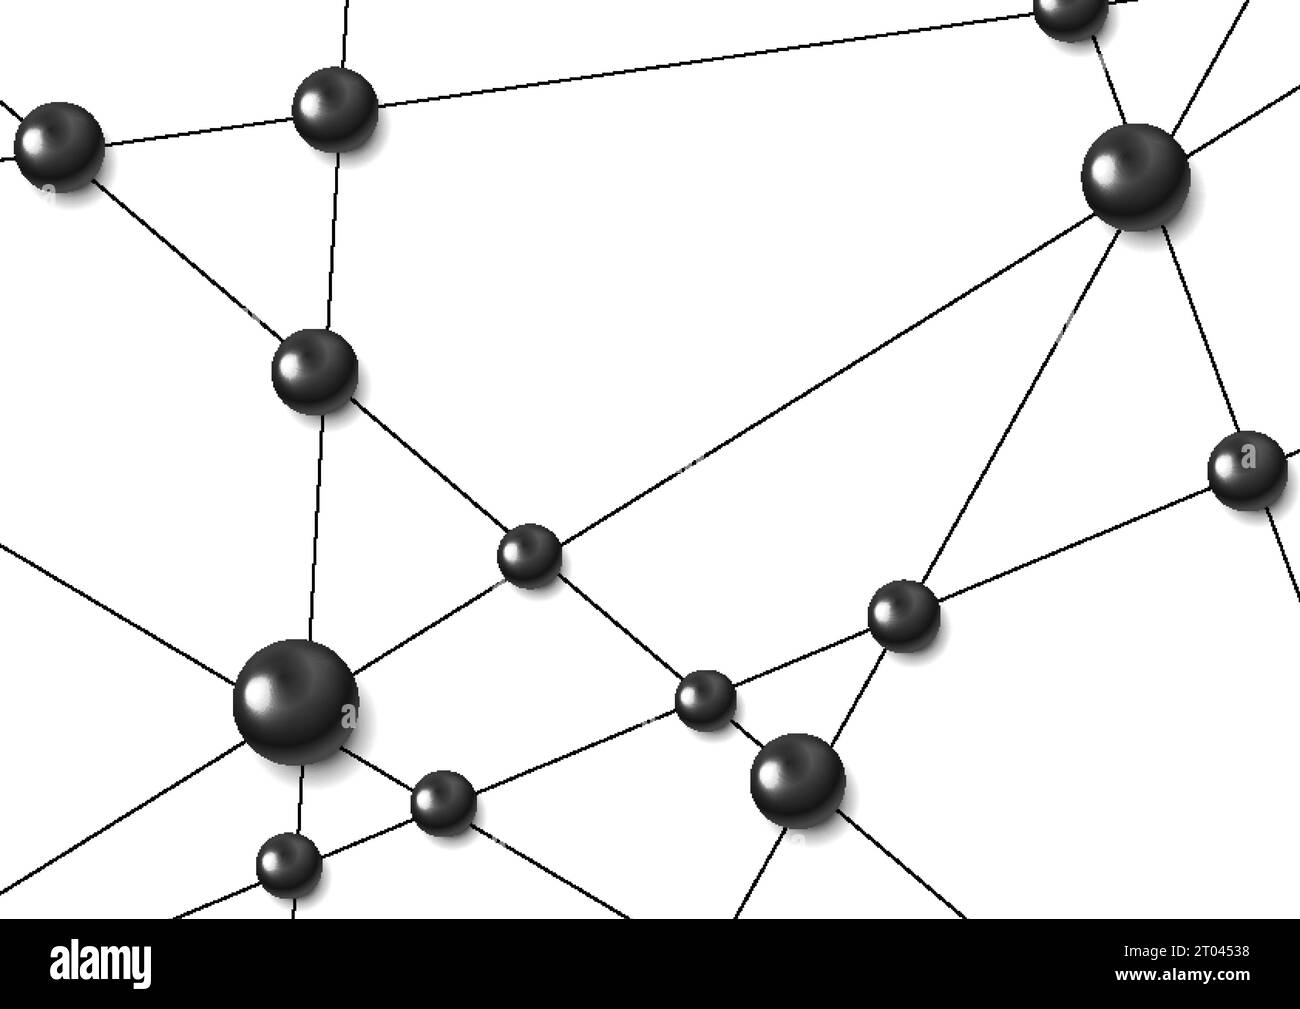 Fond abstrait de communication de réseau de technologie avec des cercles brillants noirs. Conception vectorielle Illustration de Vecteur